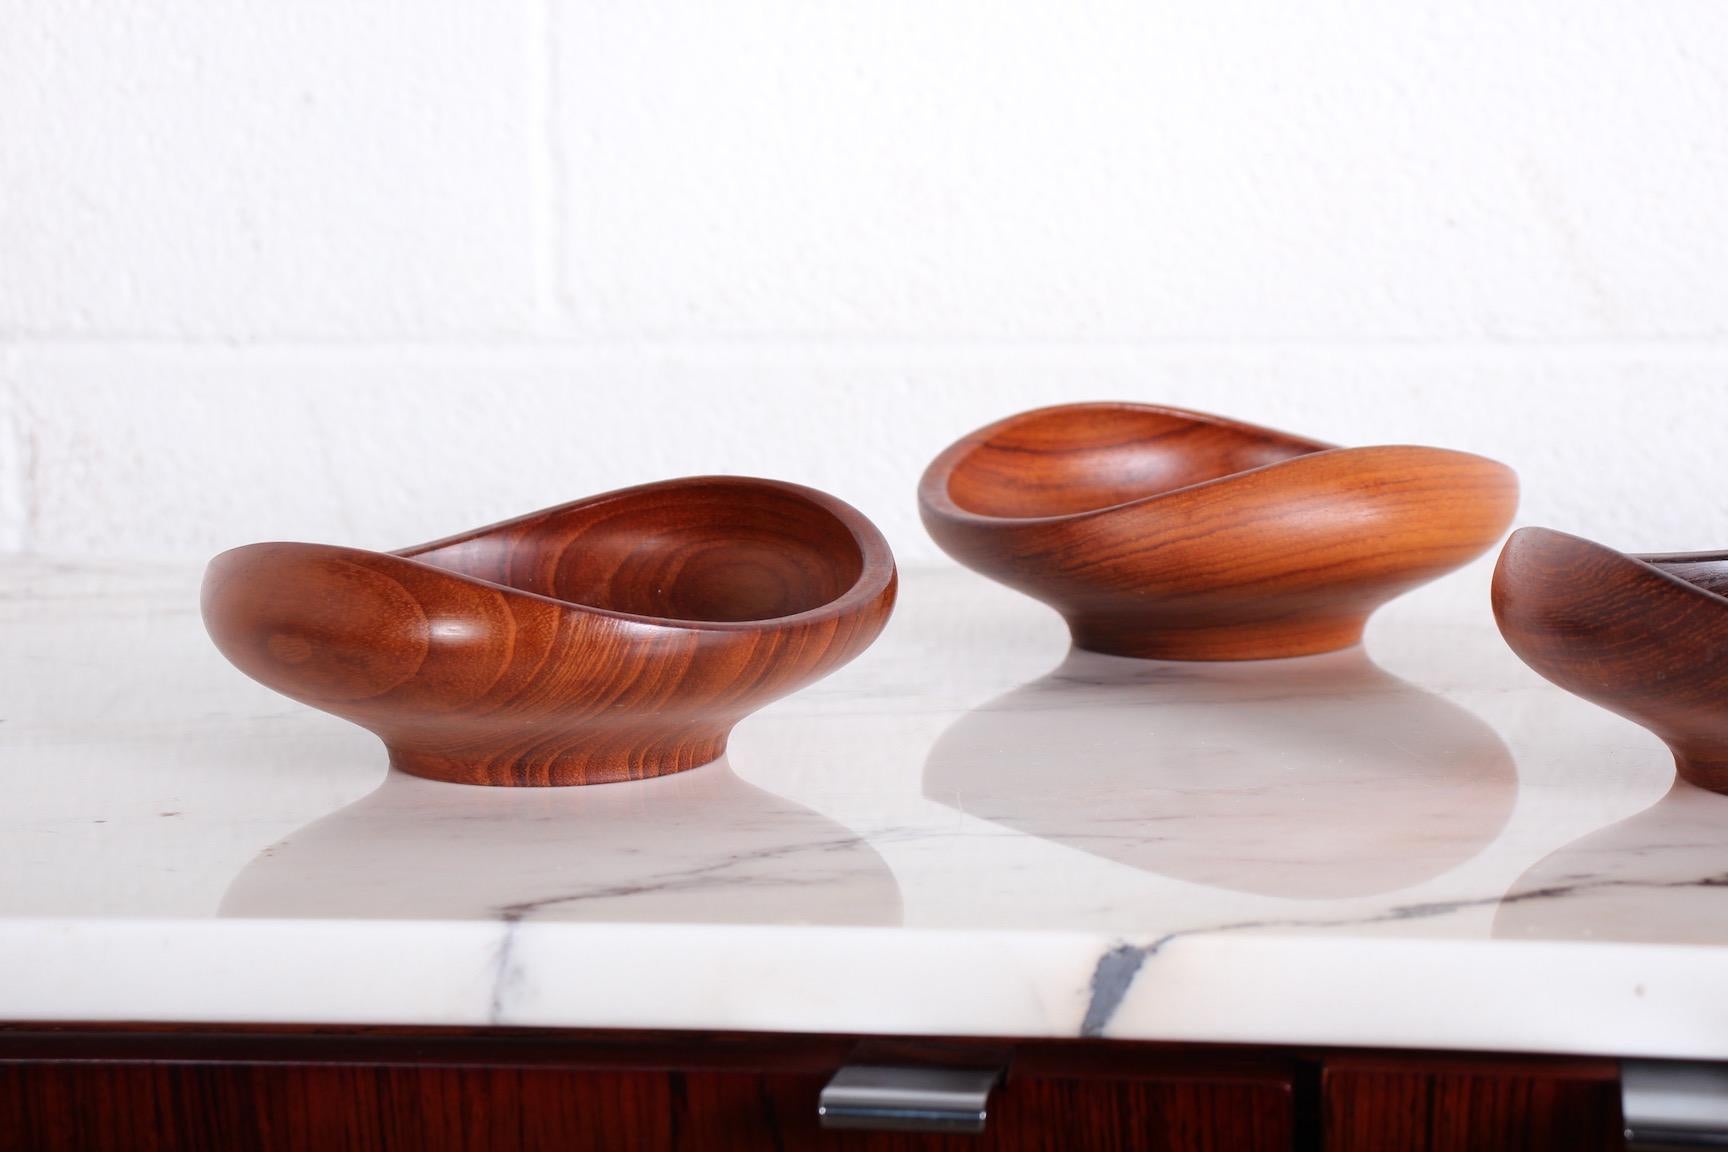 Set of Four Teak Bowls by Finn Juhl for Kay Bojesen 1